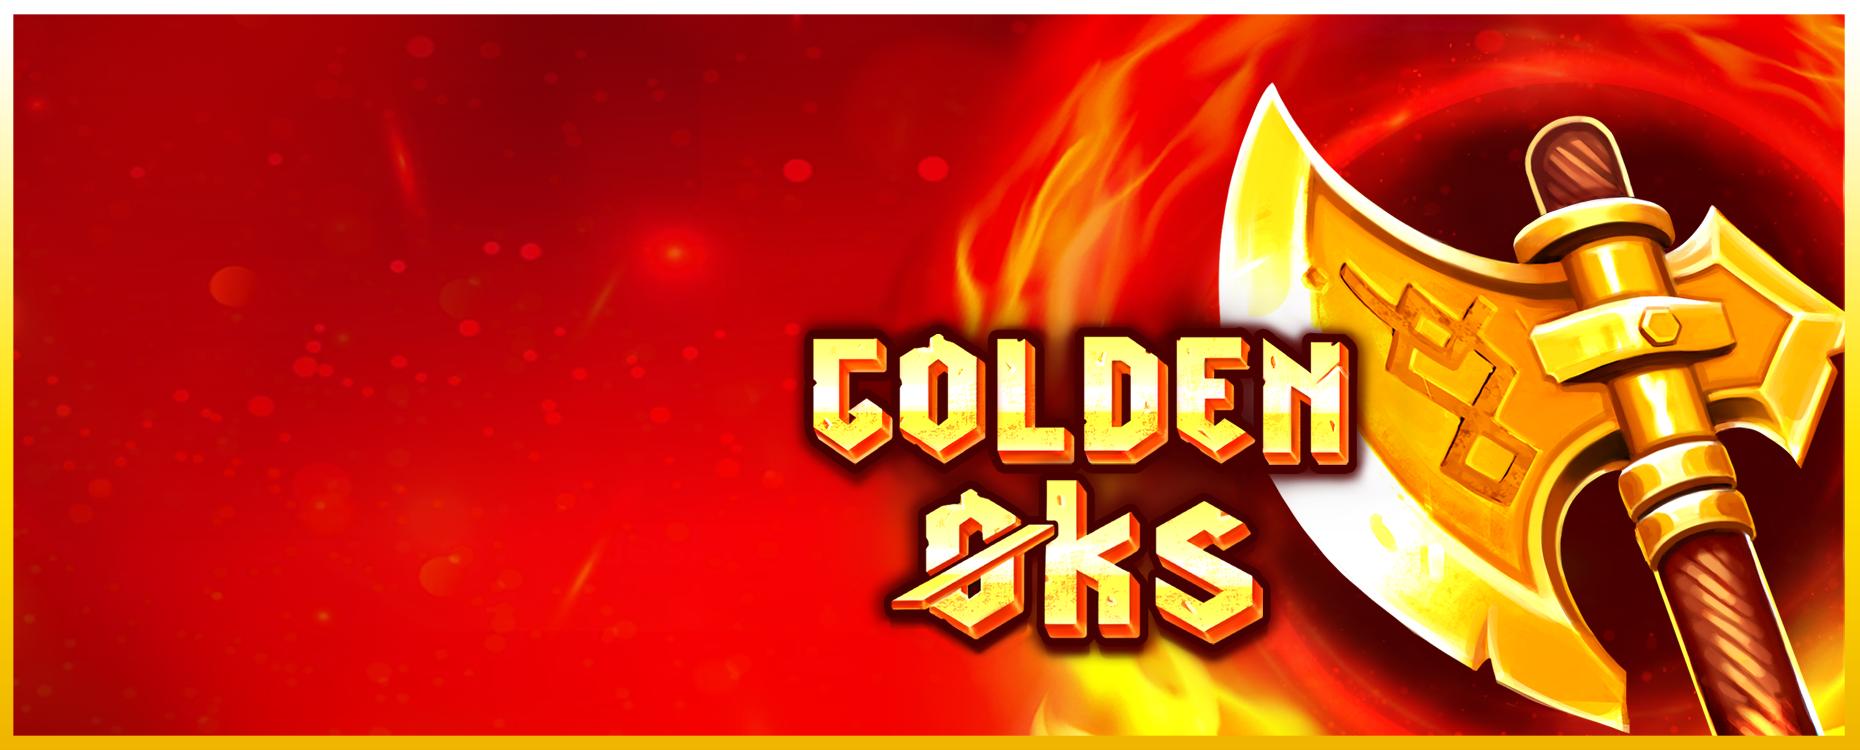 Golden øks | Promotion pack | Online slot